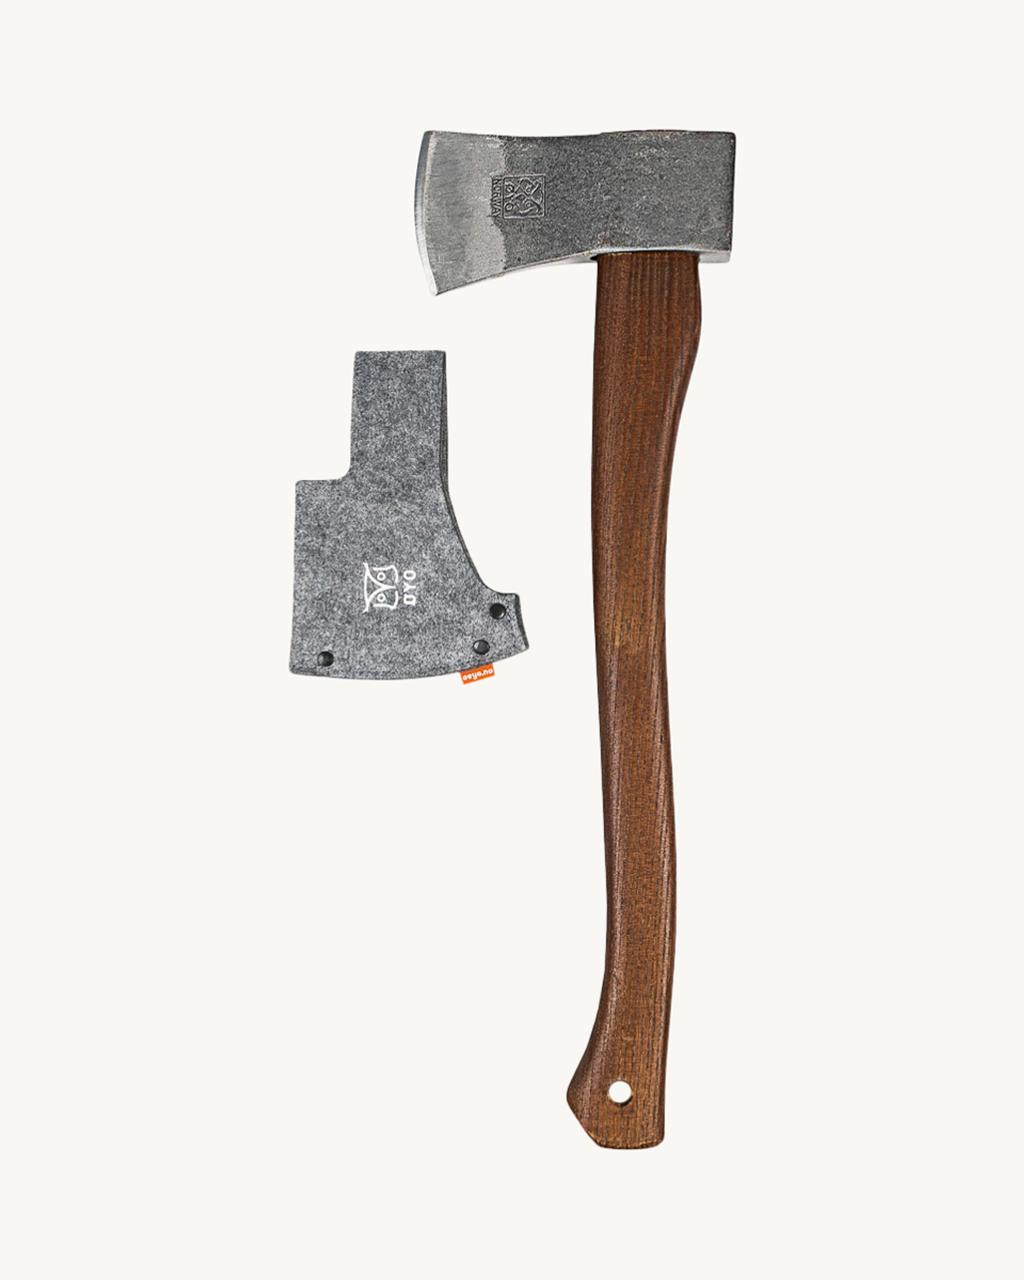 Bushcraft axe